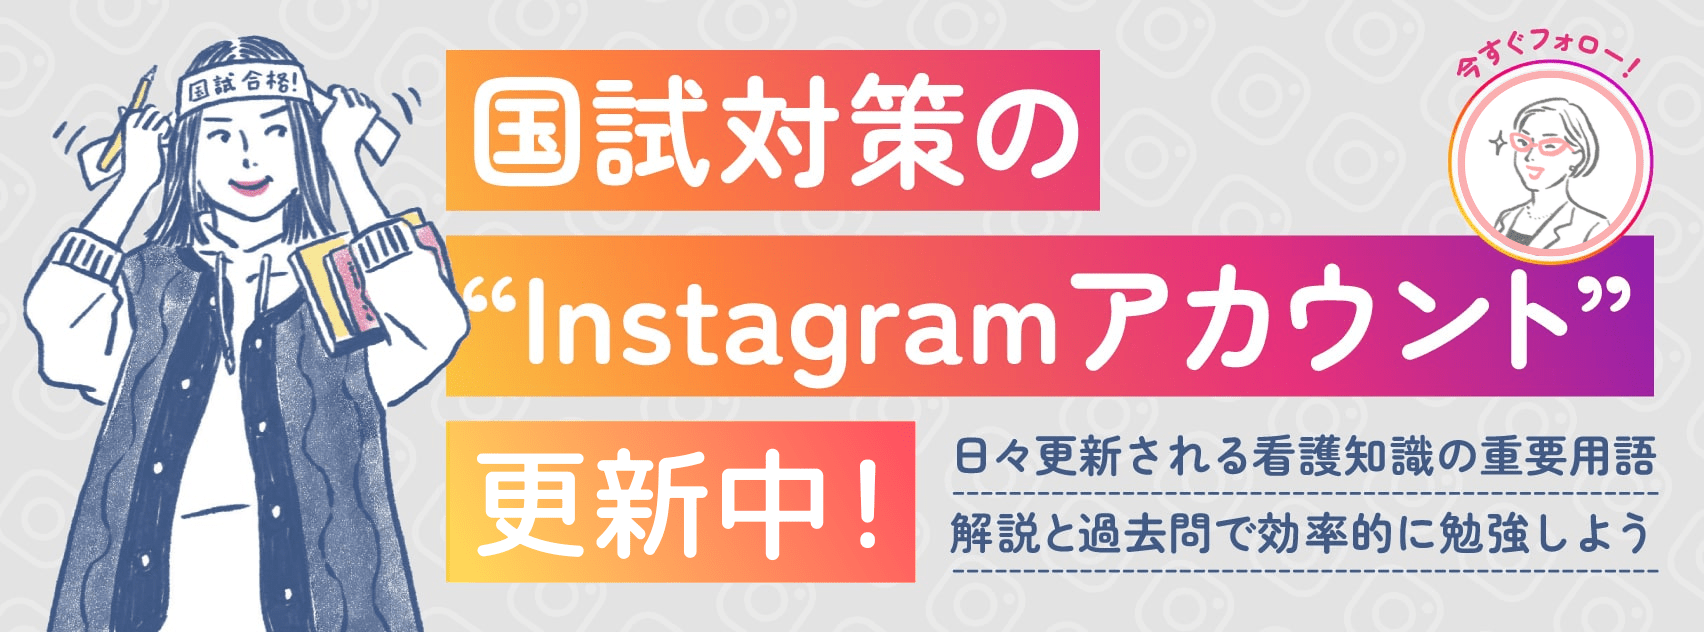 国験対策のinstagramアカウント